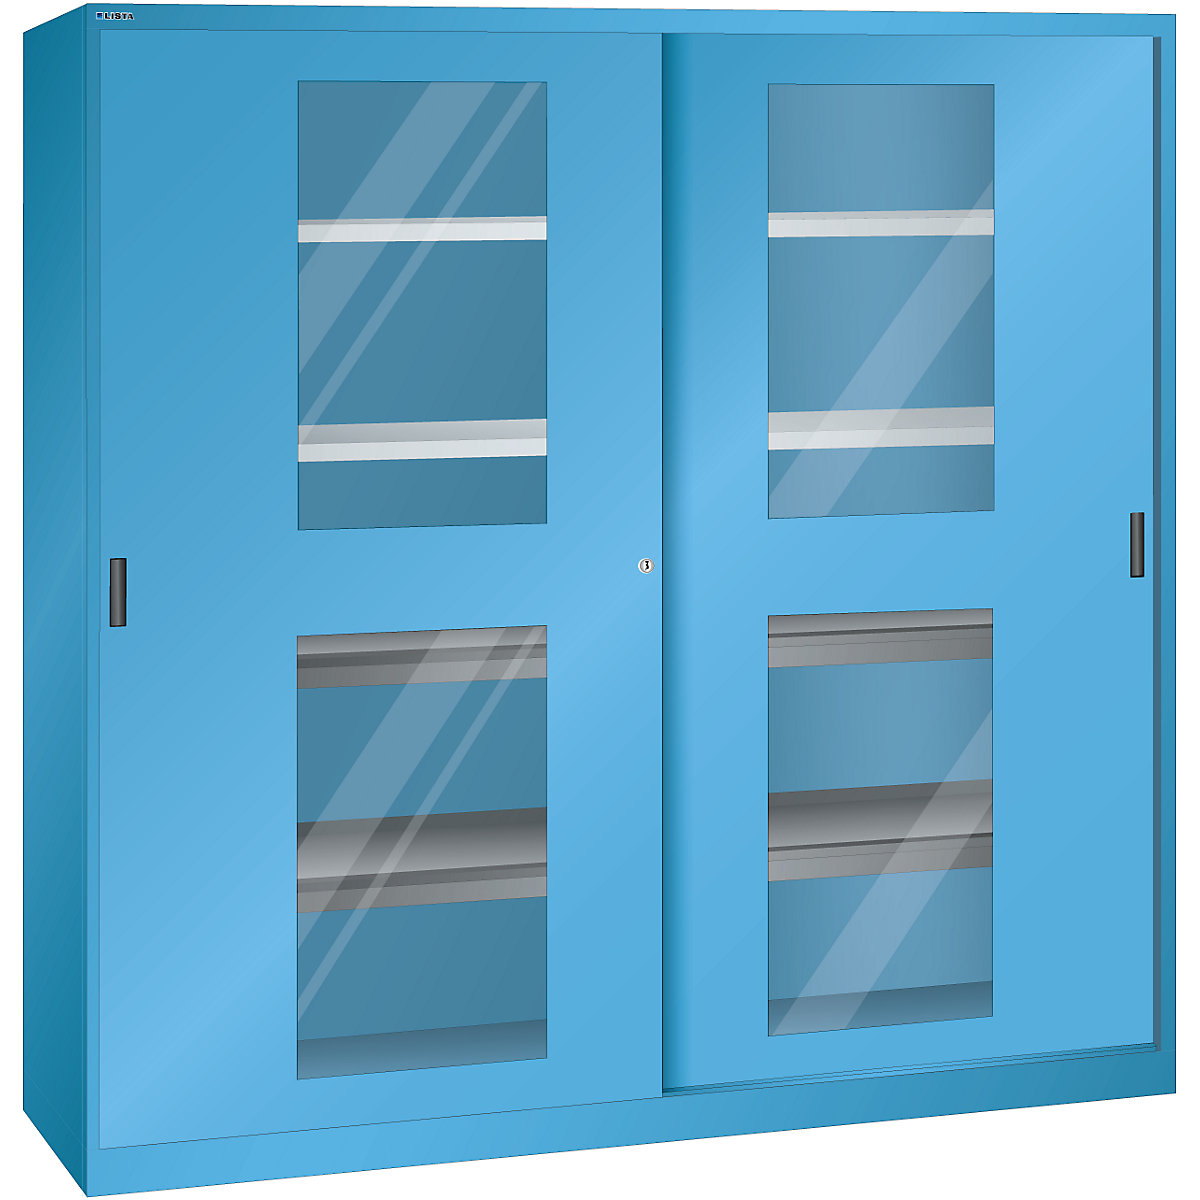 Schiebetürenschrank mit Sichtfenstertüren LISTA, 4 Fachböden, 4 Auszugböden, lichtblau-8